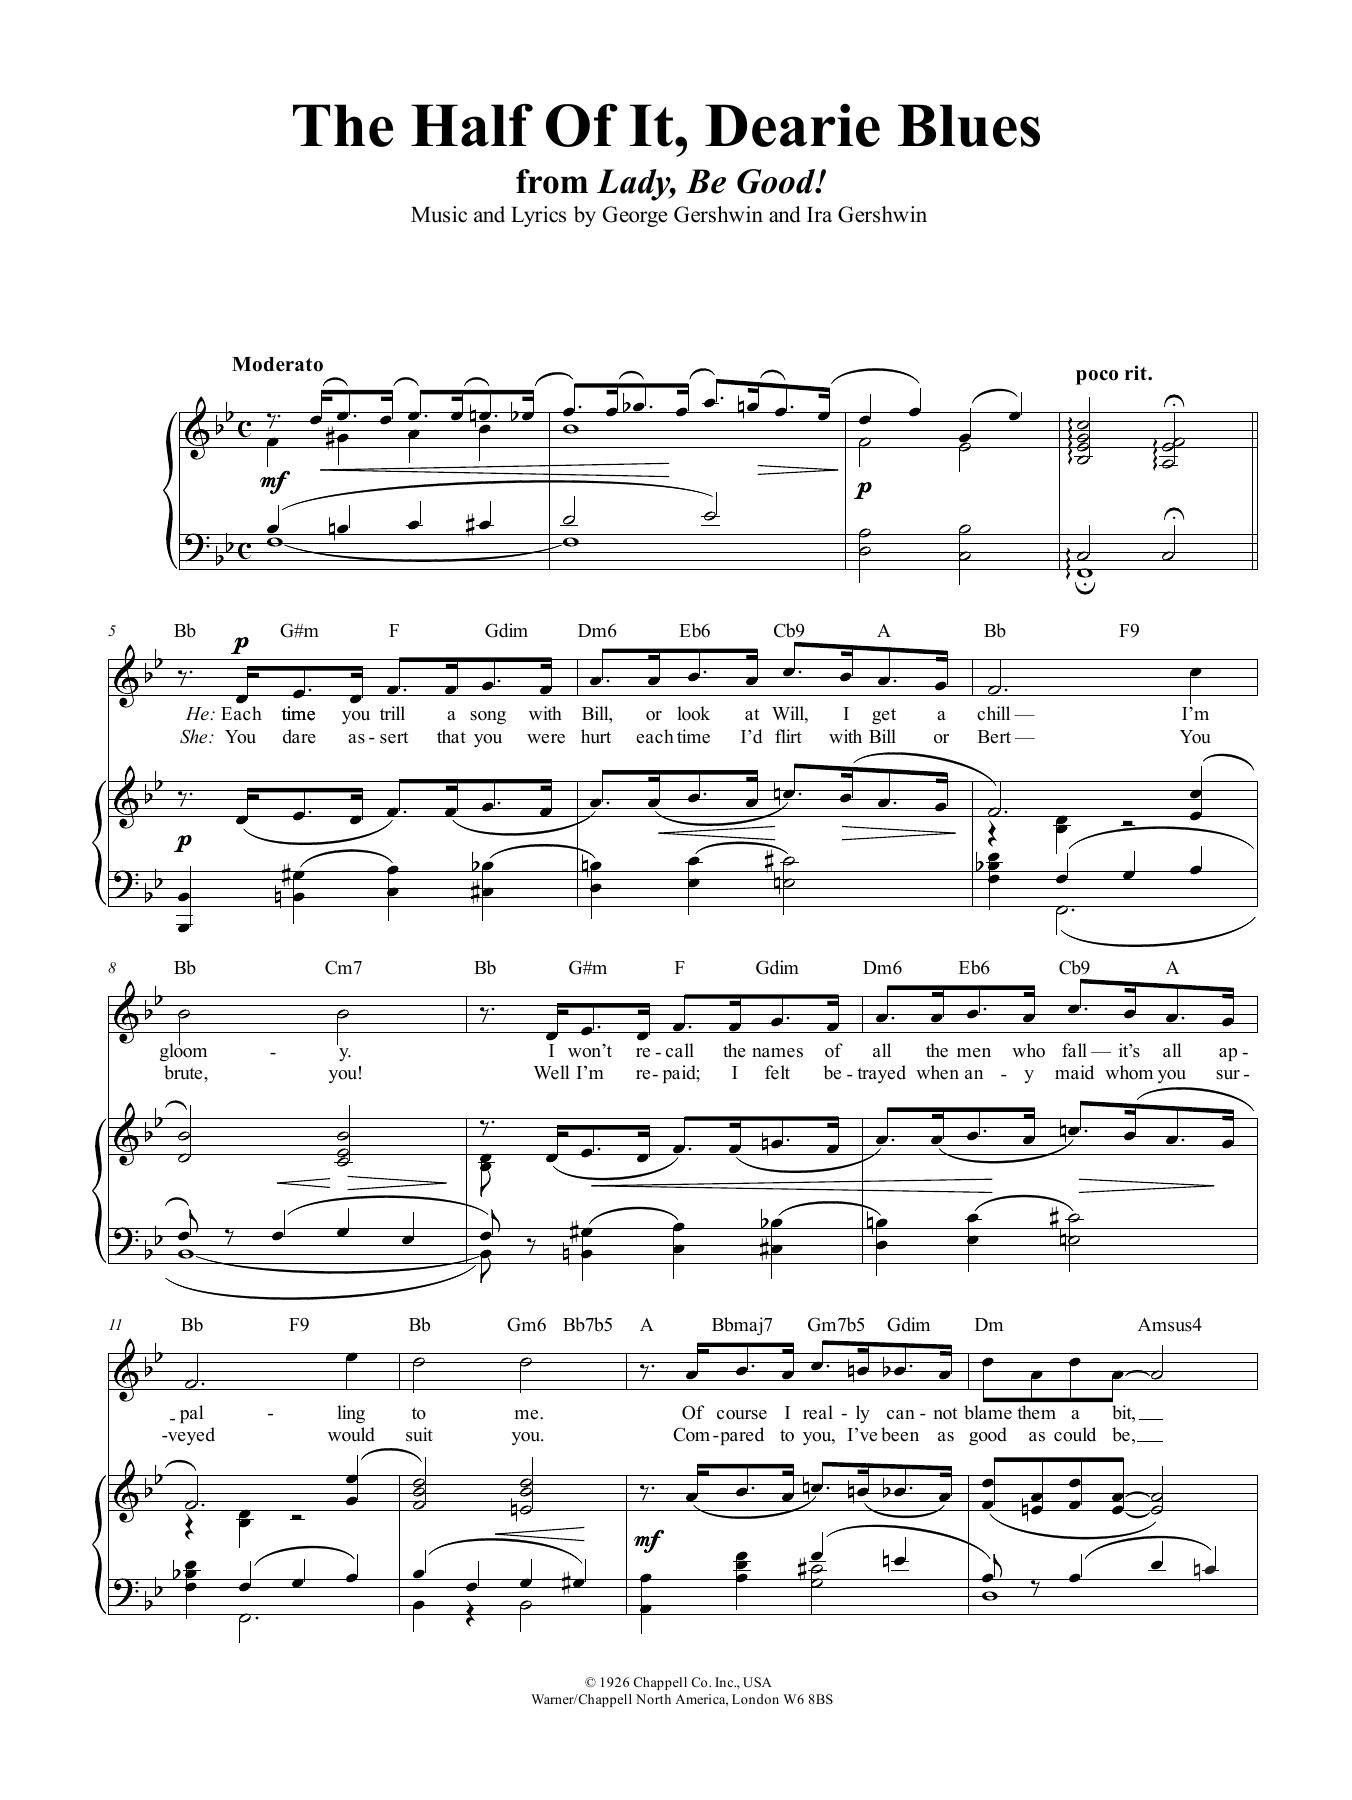 Download George Gershwin The Half Of It, Dearie Blues Sheet Music